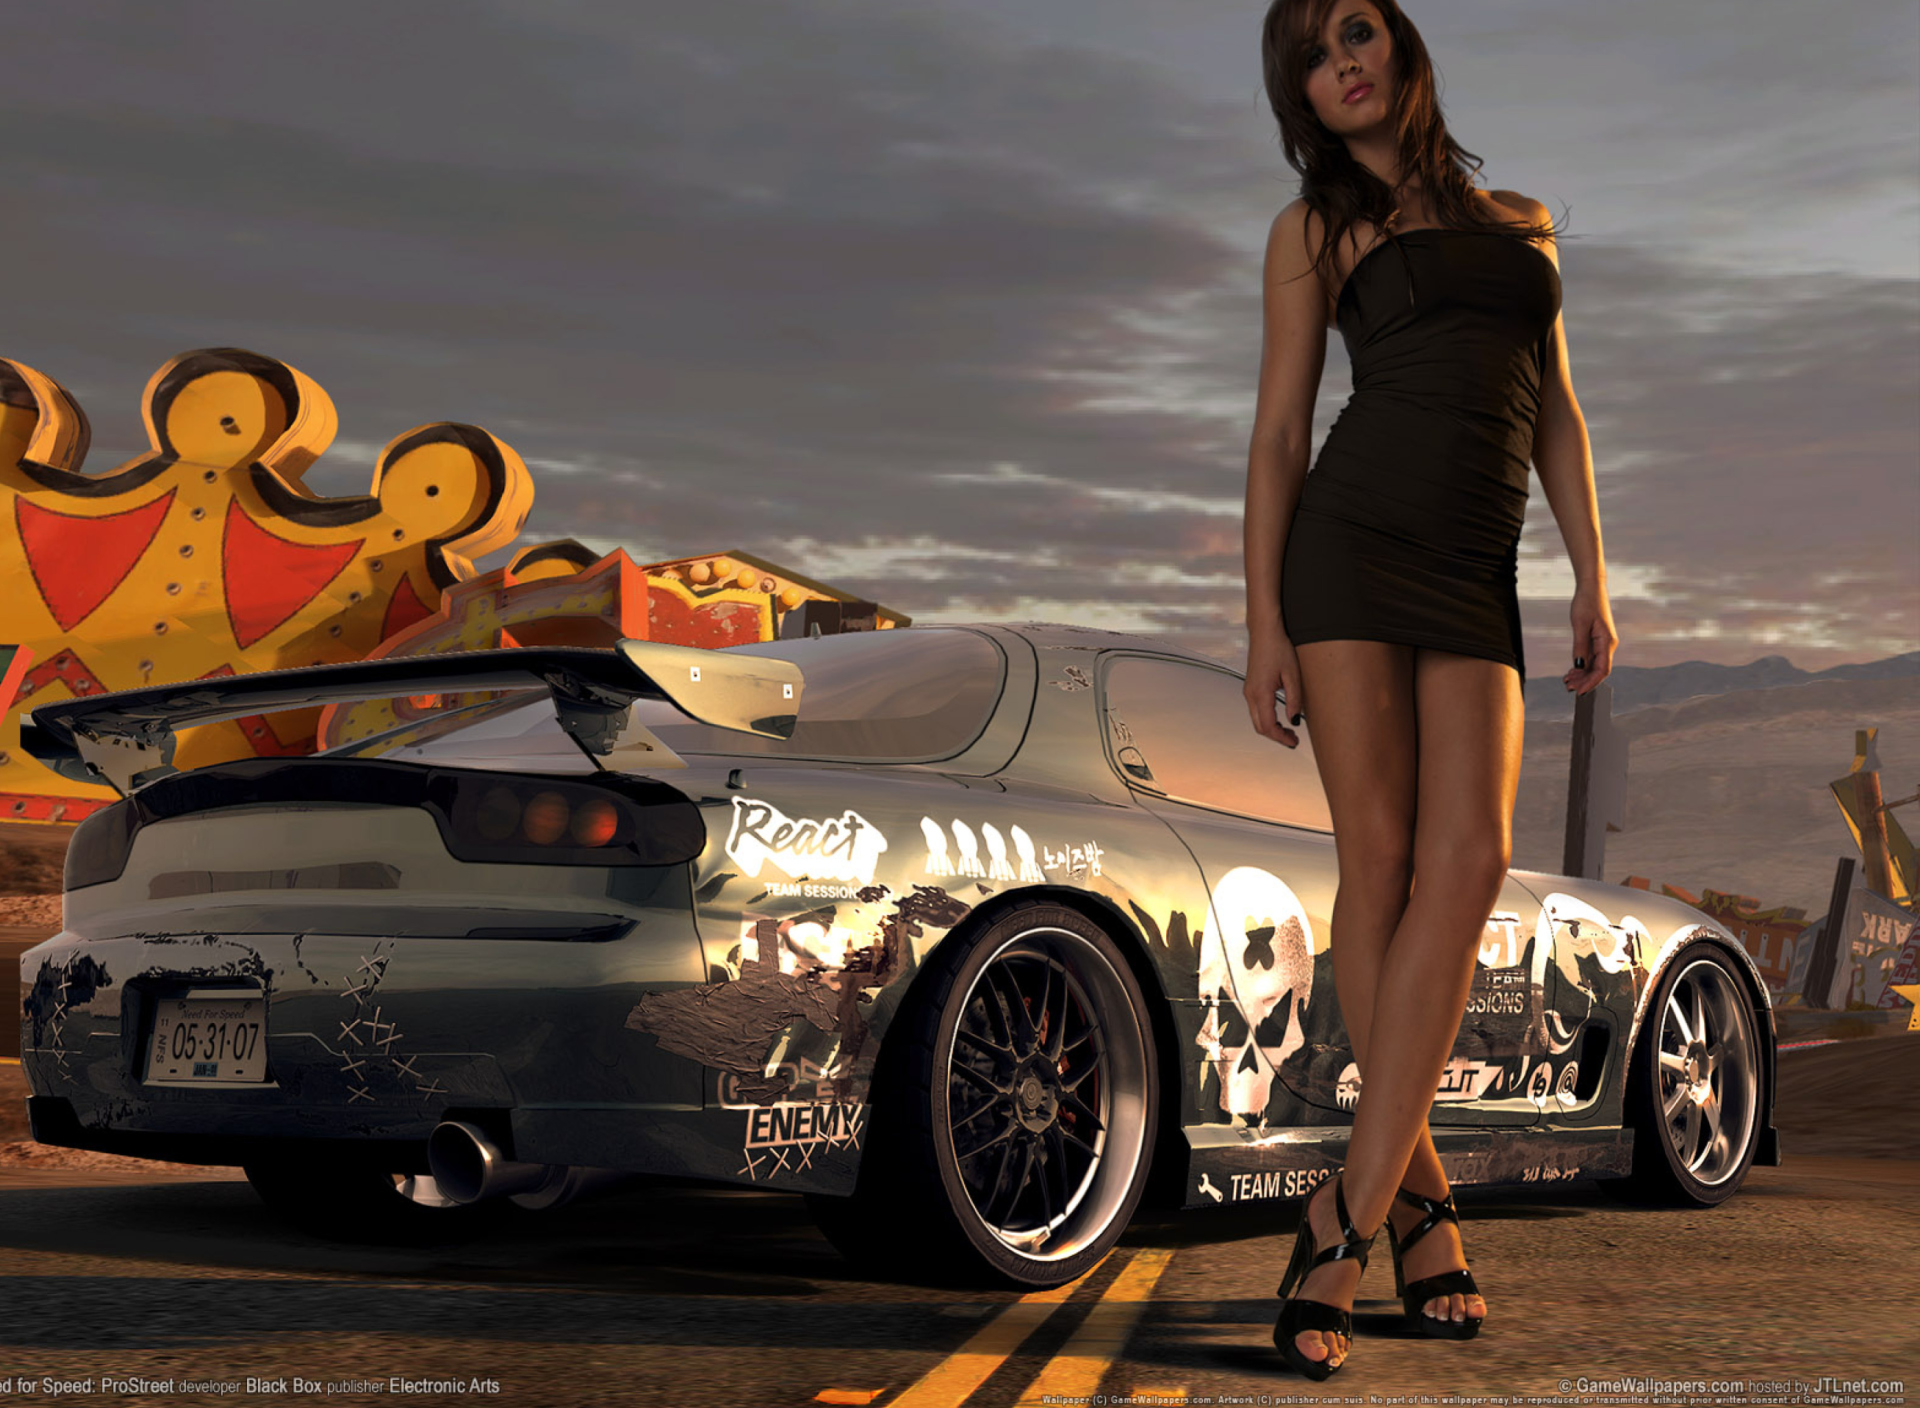 Hot Girl Standing Next To Sport Car wallpaper 1920x1408